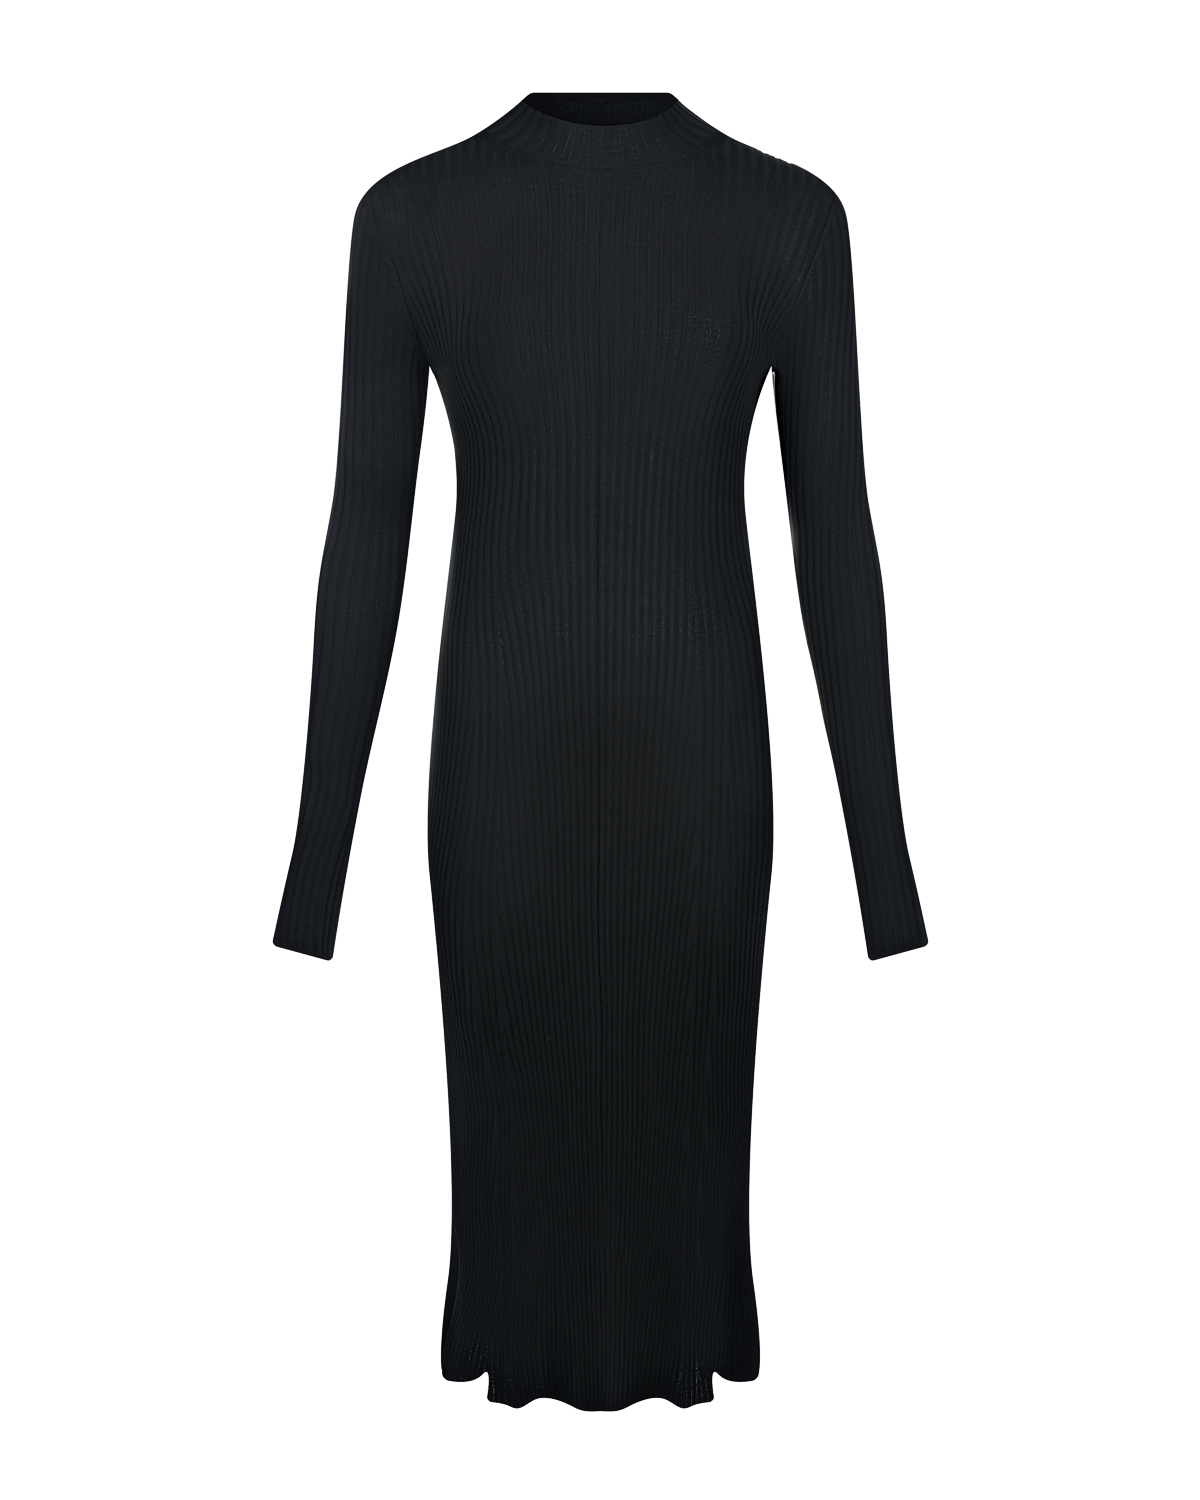 Черное платье с вырезом на спине MRZ